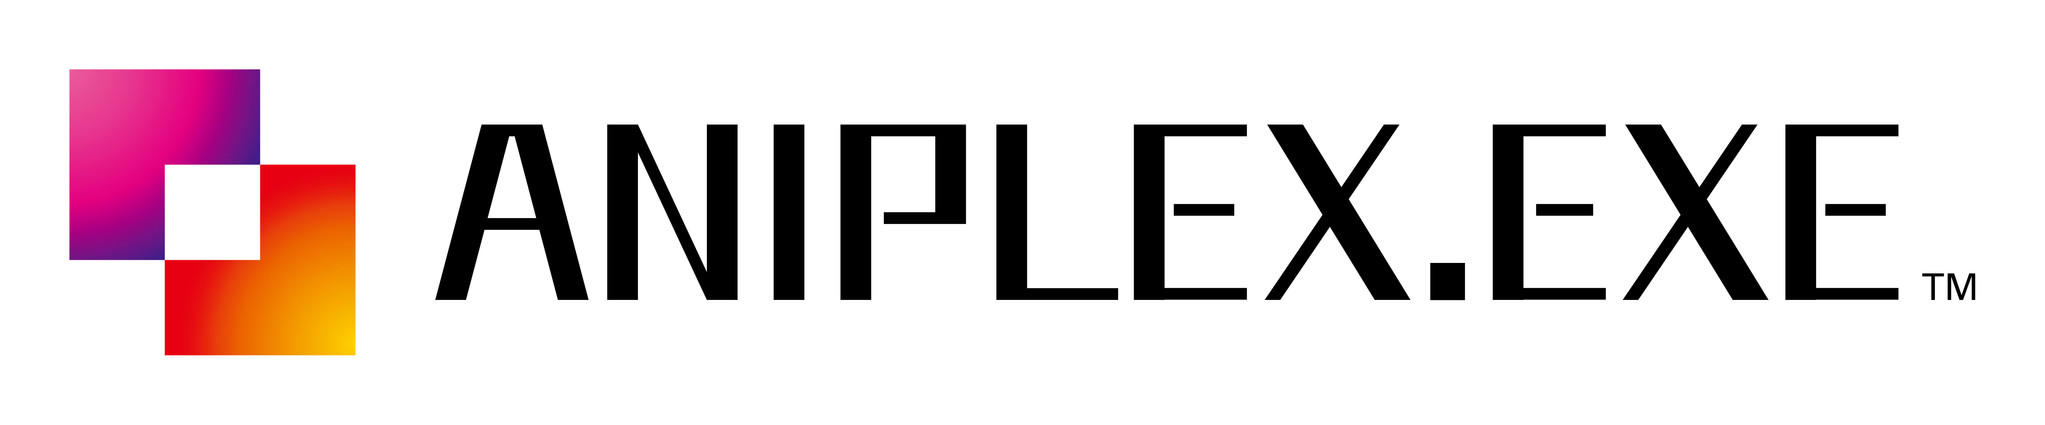 アニプレックスがノベルゲームの新ブランド Aniplex Exe を発足 年 Pc向けに2タイトル配信予定 株式会社アニプレックス のプレスリリース